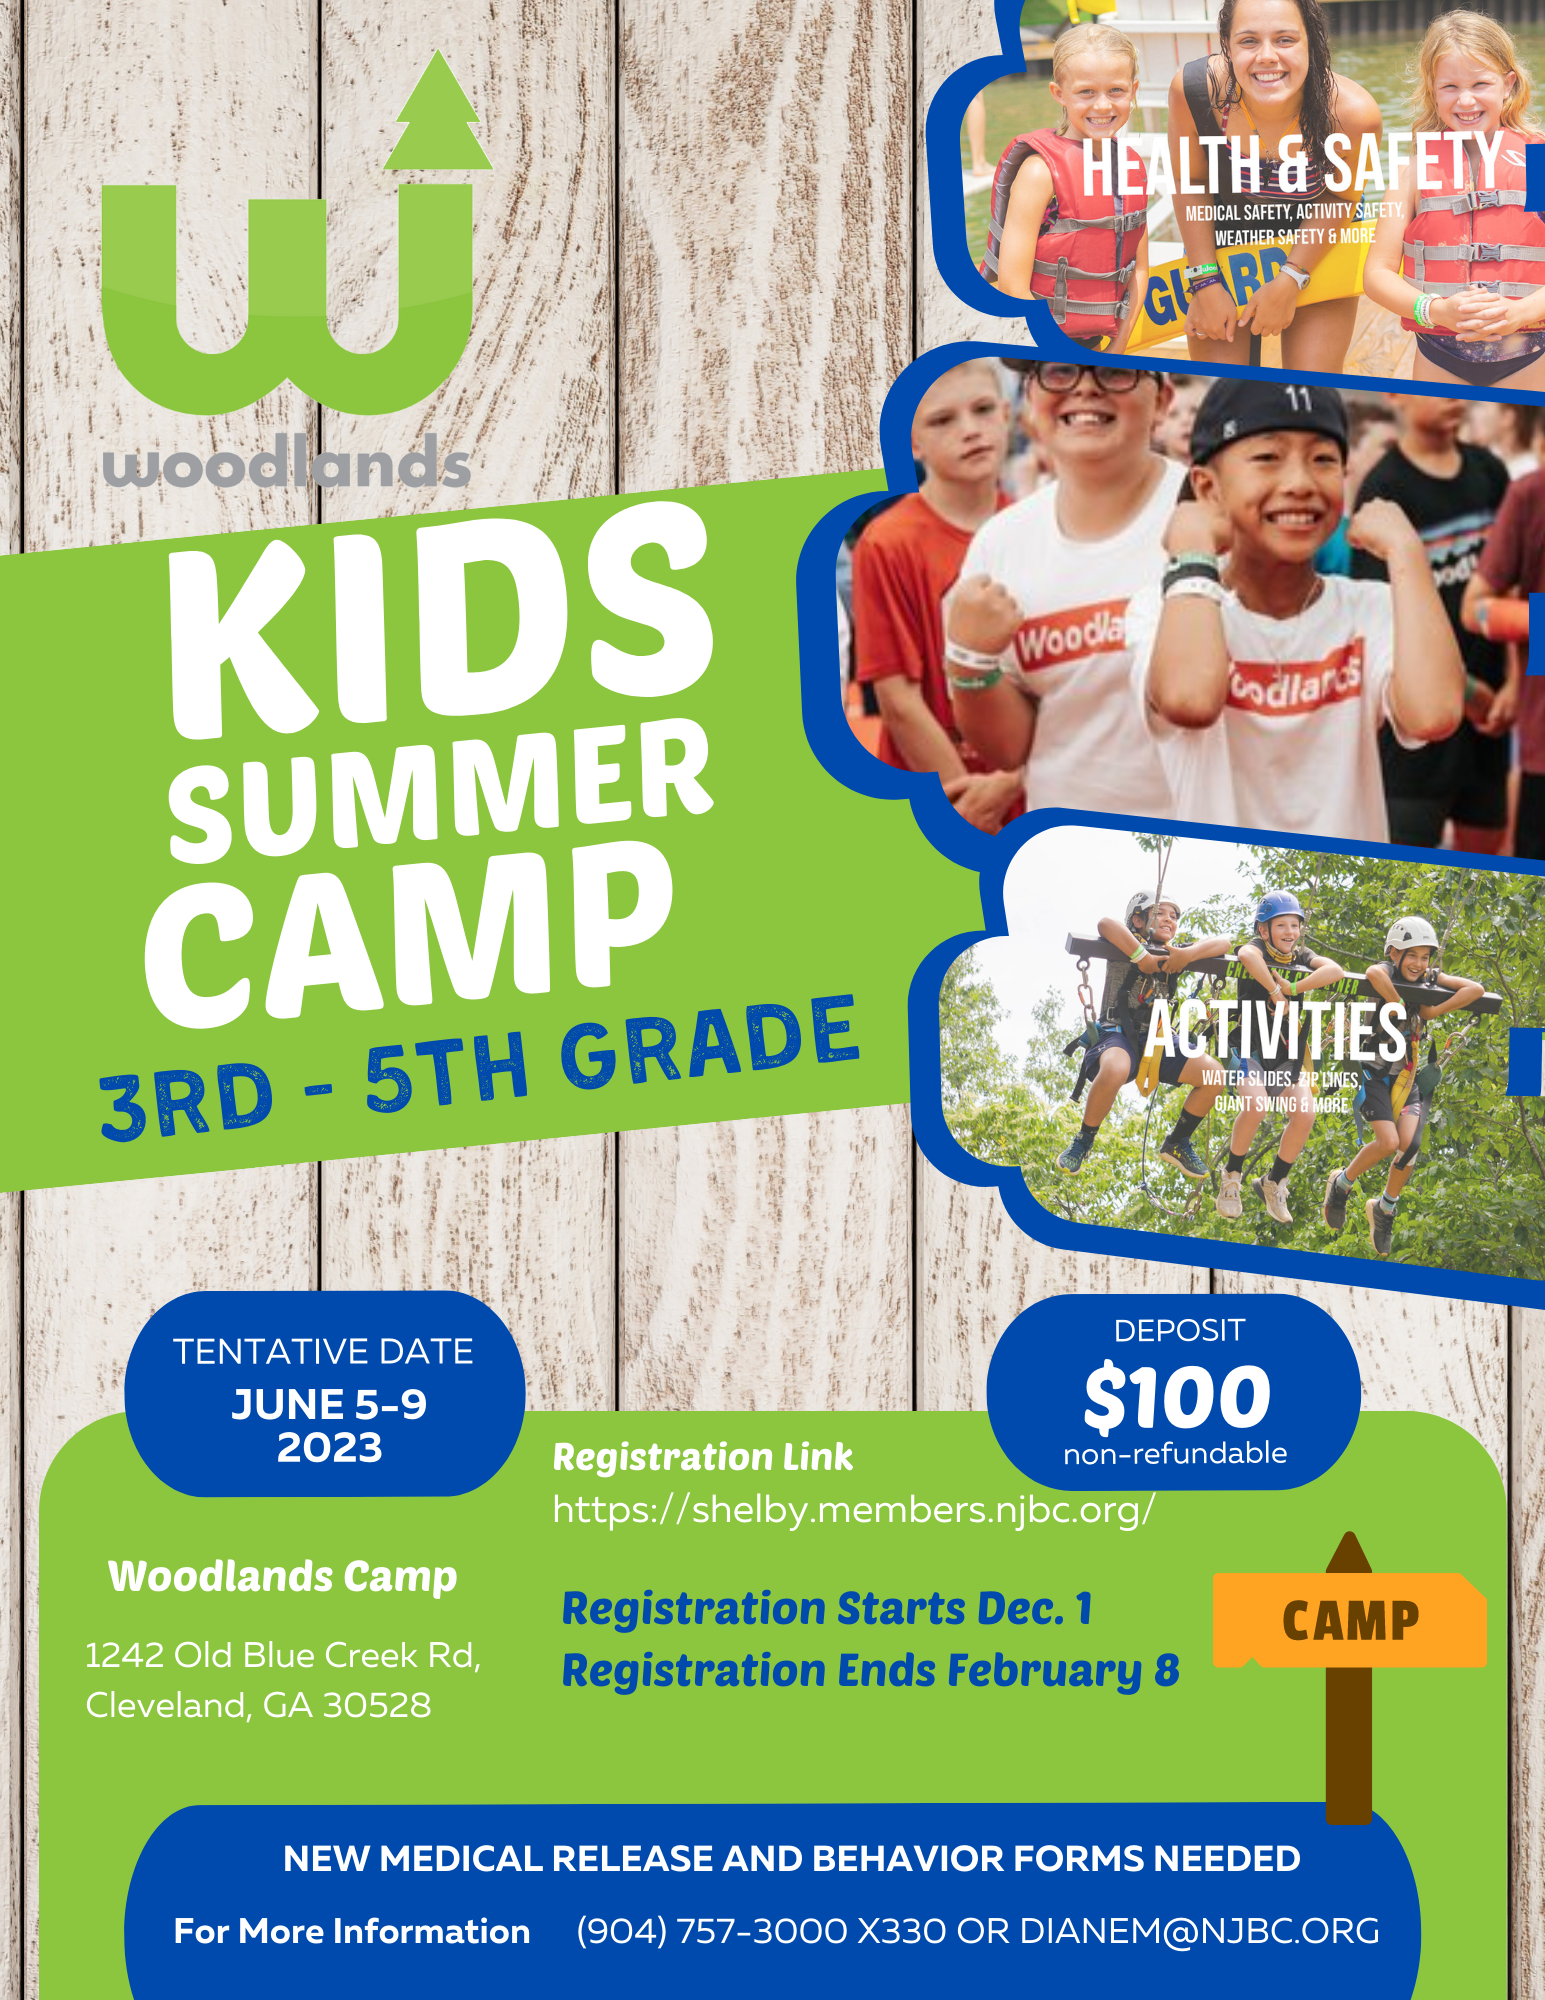 Woodlands Kids Summer Camp 2023